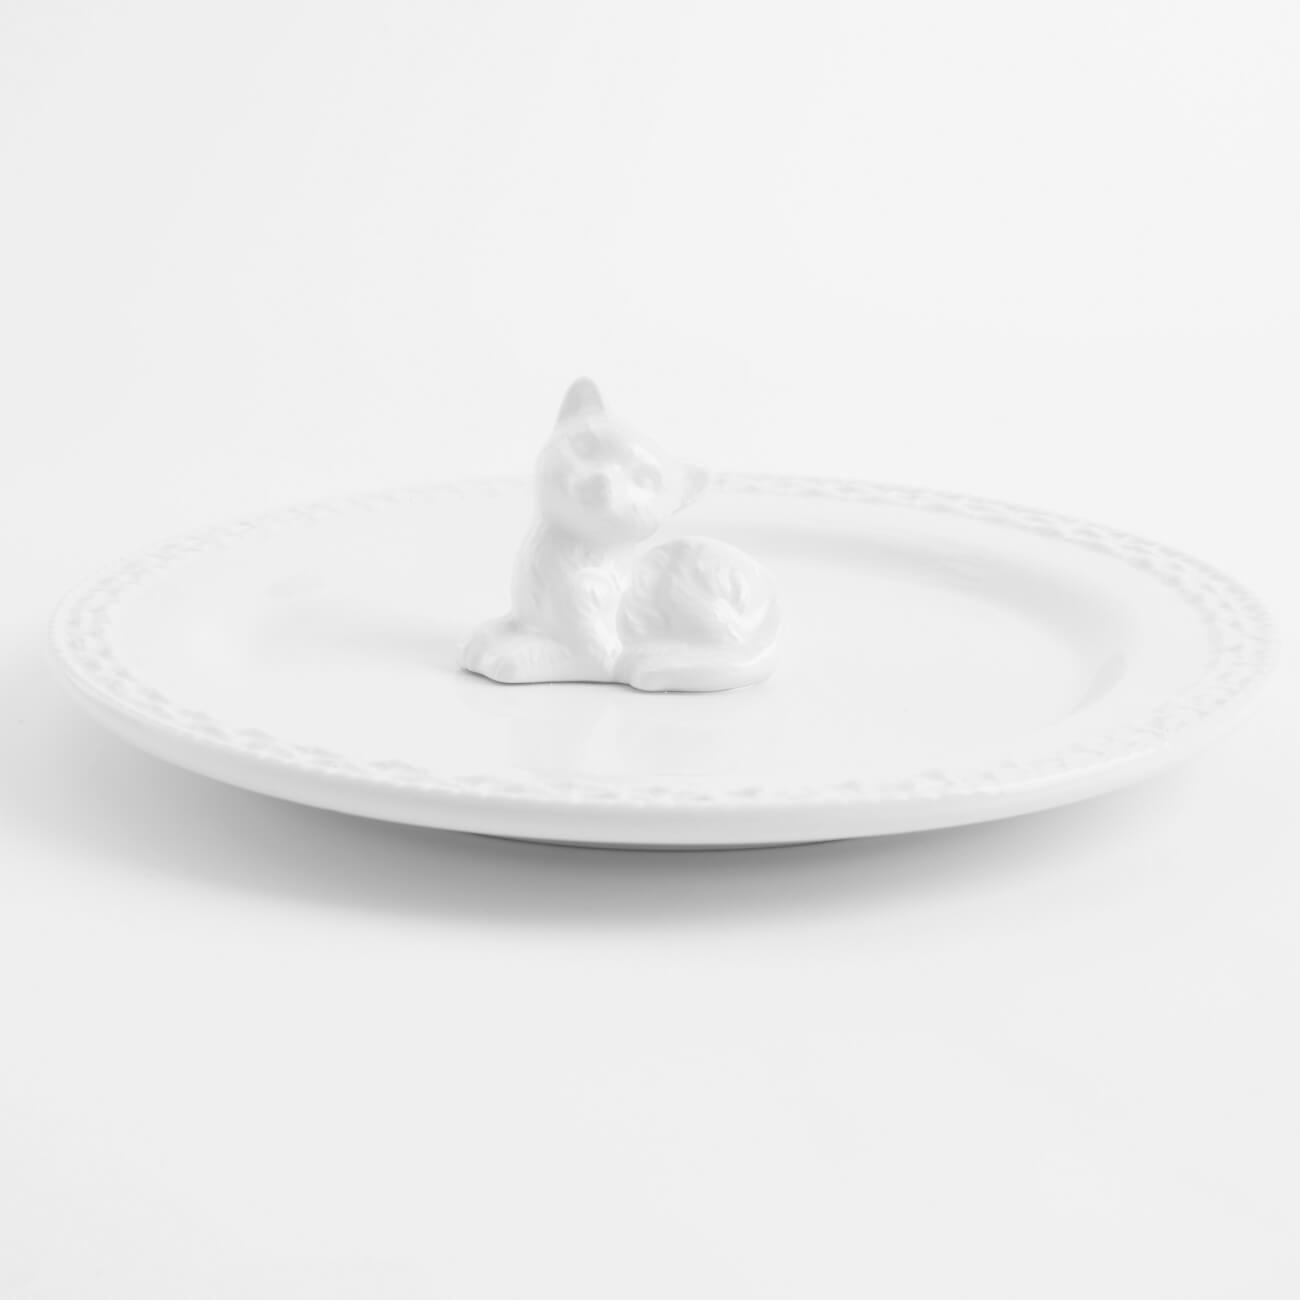 Блюдо, 20 см, керамика, белое, Кот, Kitten блюдо 24 см керамика белое лицо face